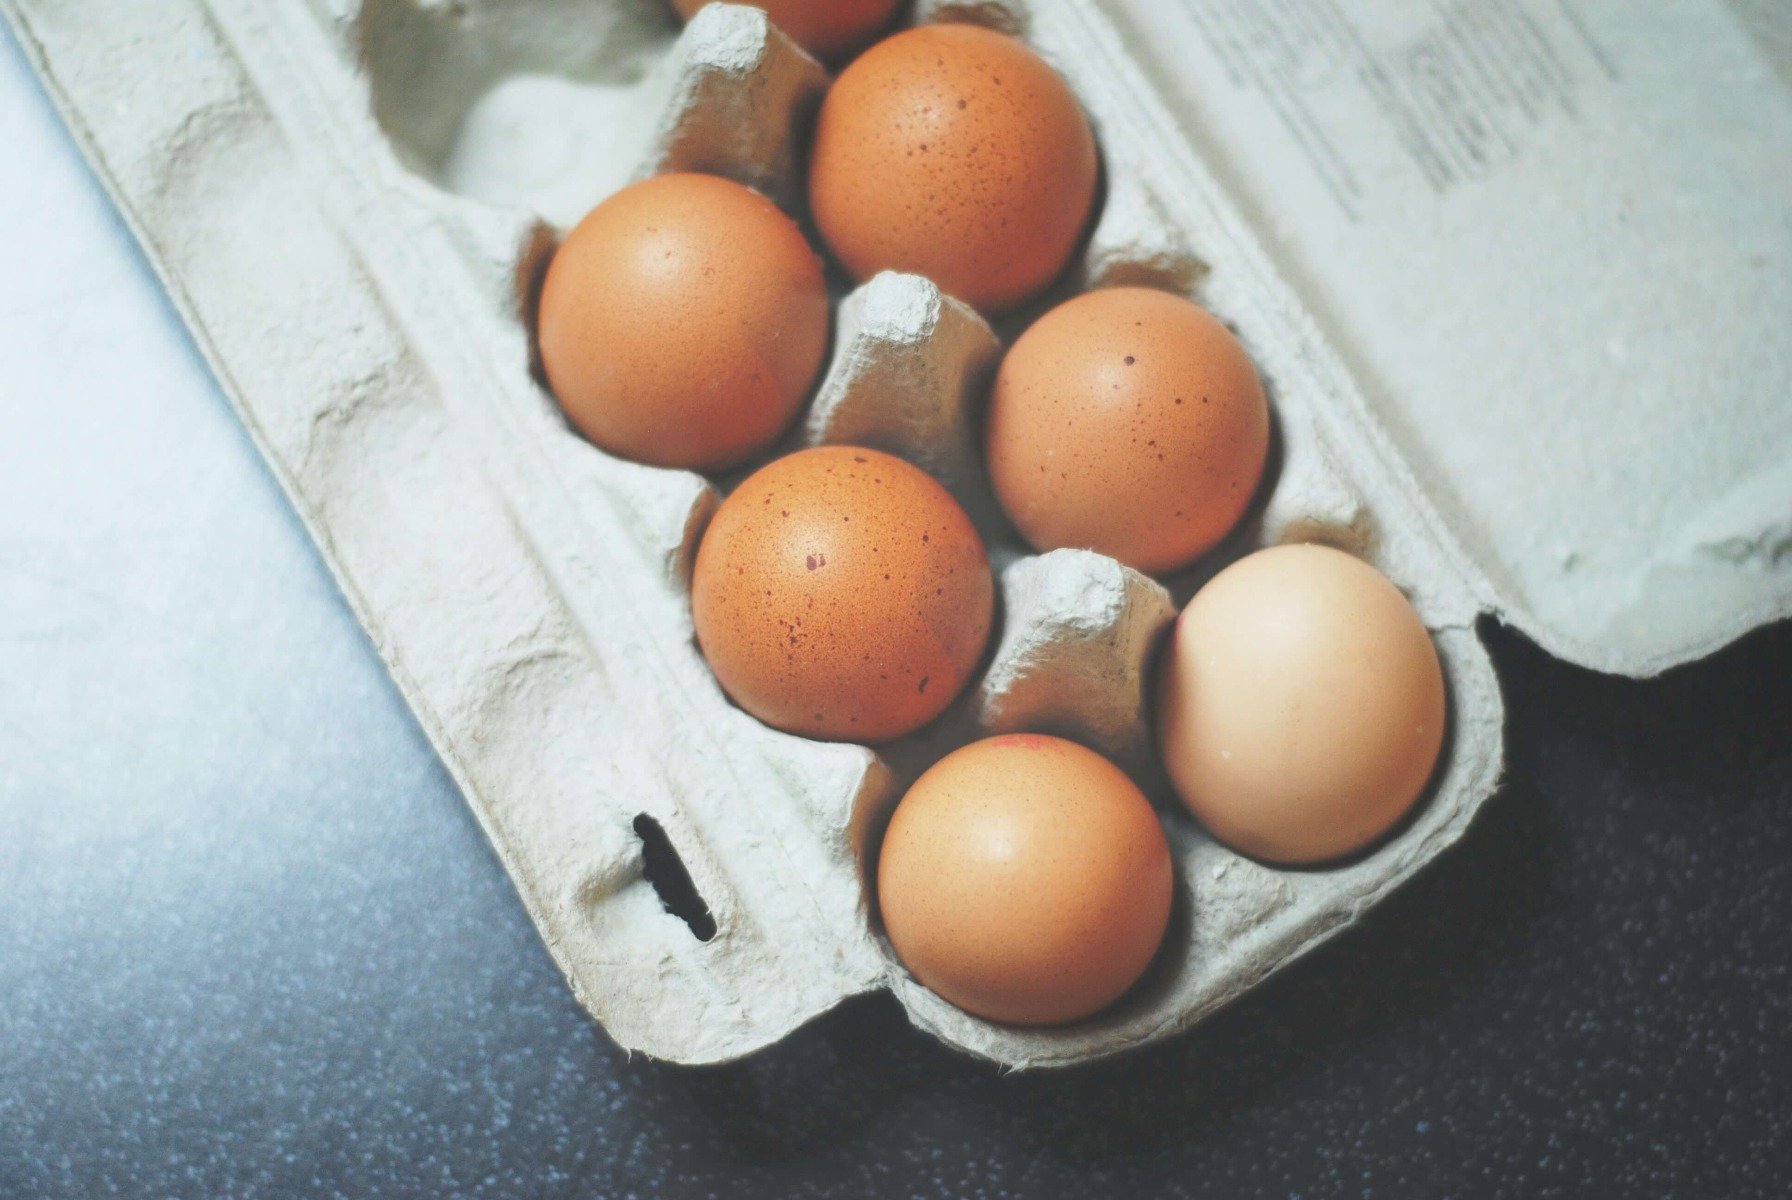 Opakowanie z sześcioma kurzymi jajami